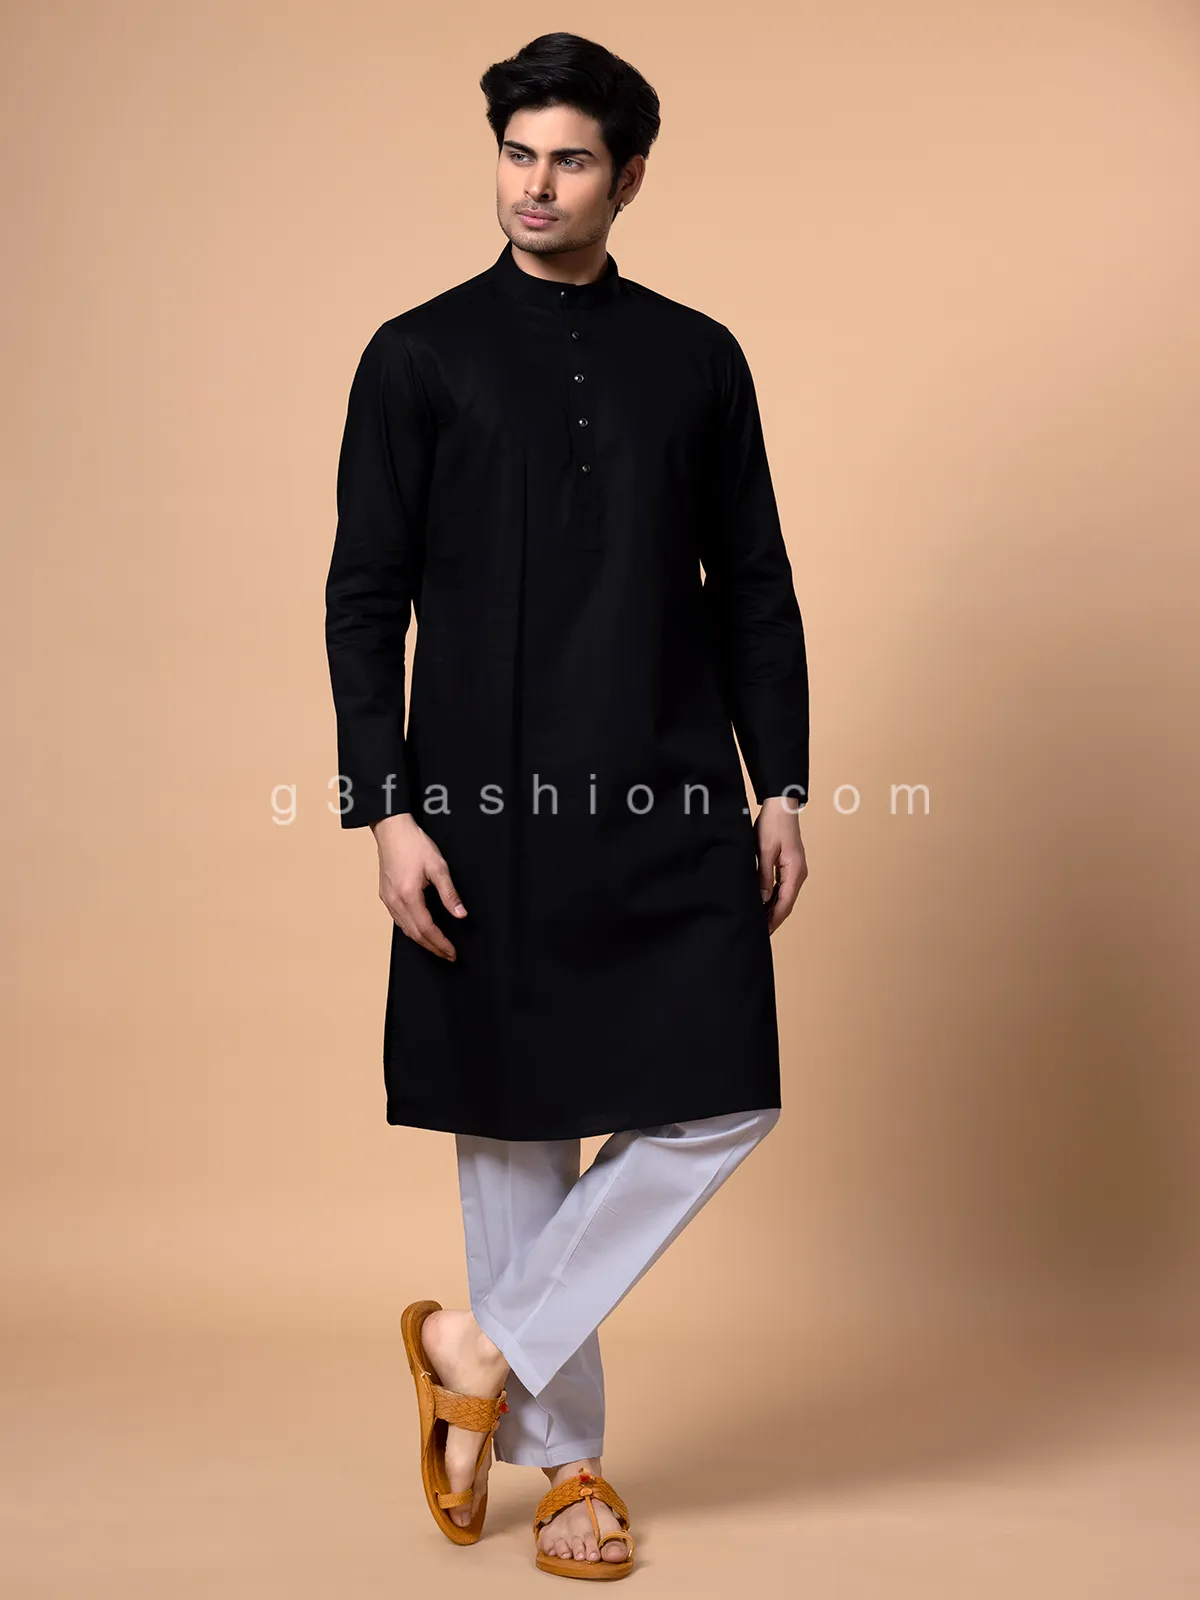 Cotton black kurta suit for men